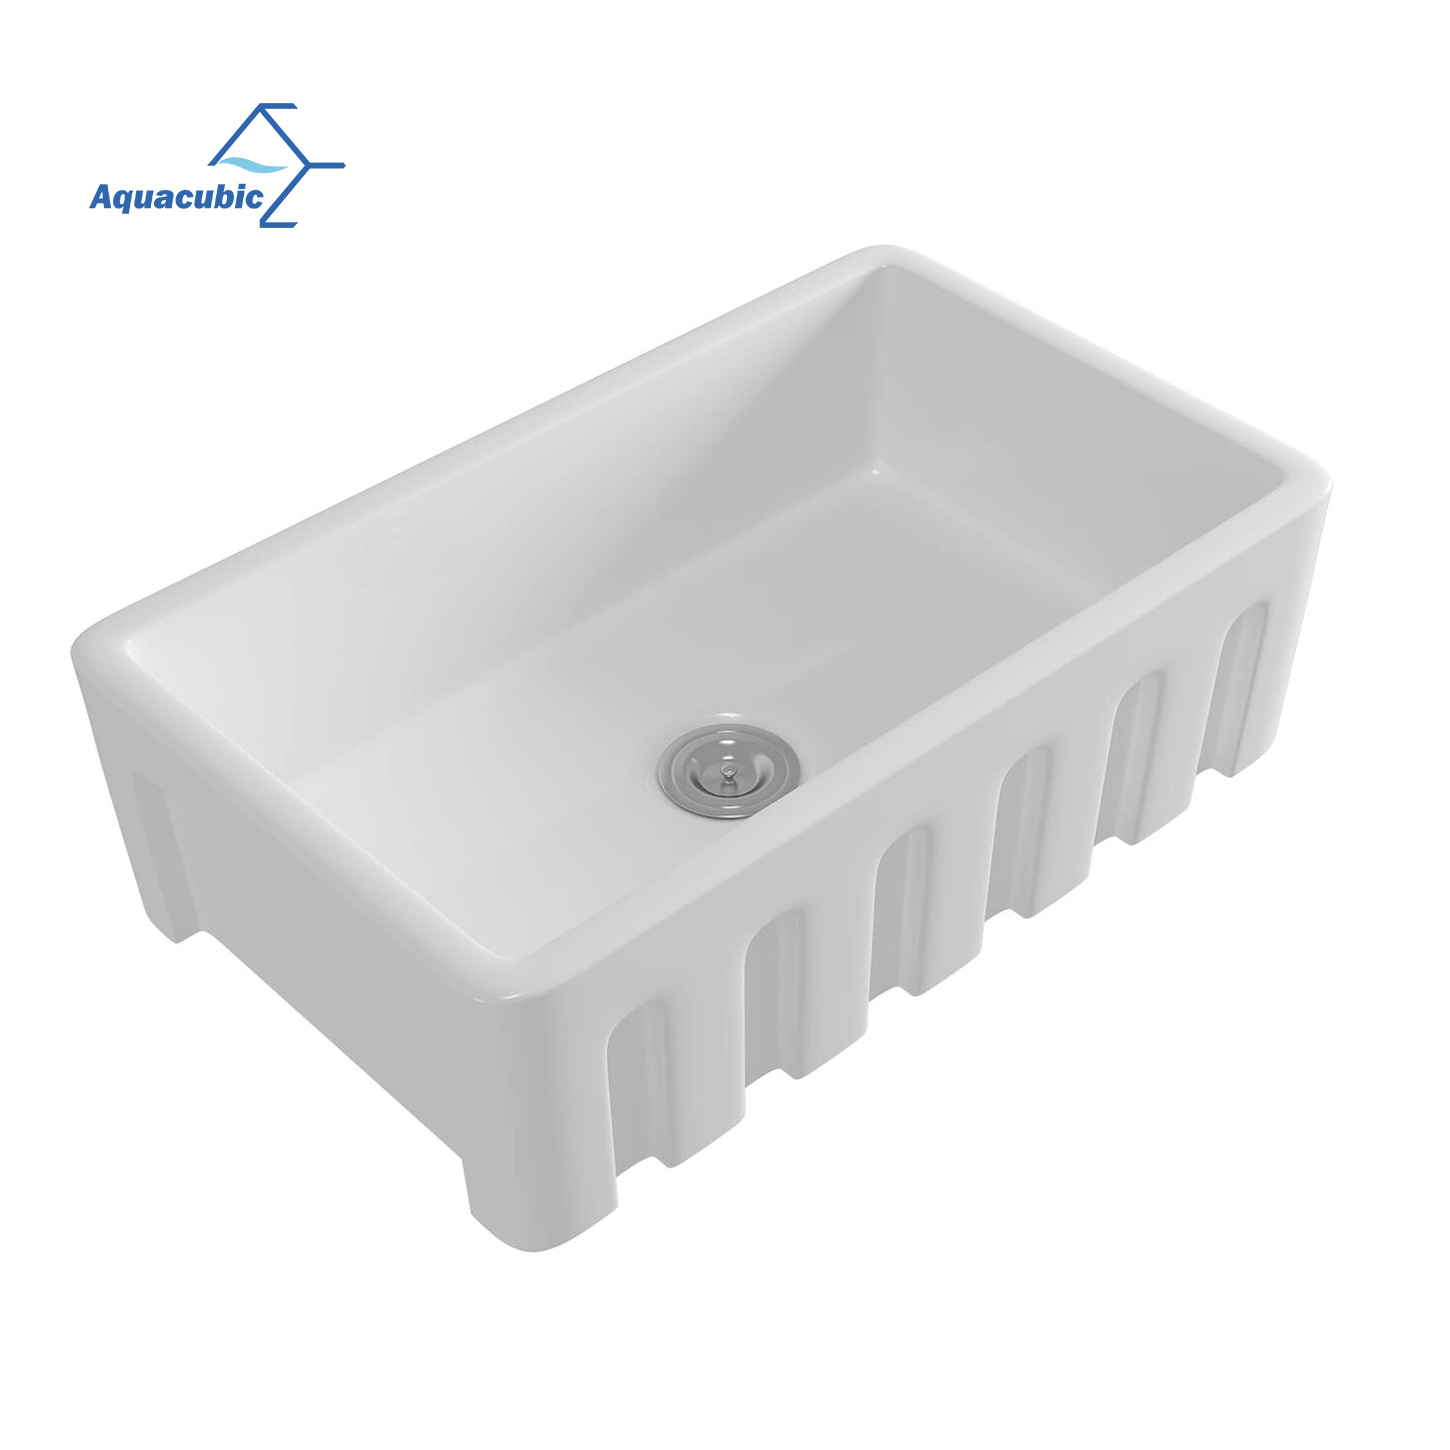 Aquacubic Einzelschüssel, 83,8 cm, Keramik-Küchenspüle, weiß, wendbare Spüle mit Bodengitter und Korbsieb für die USA